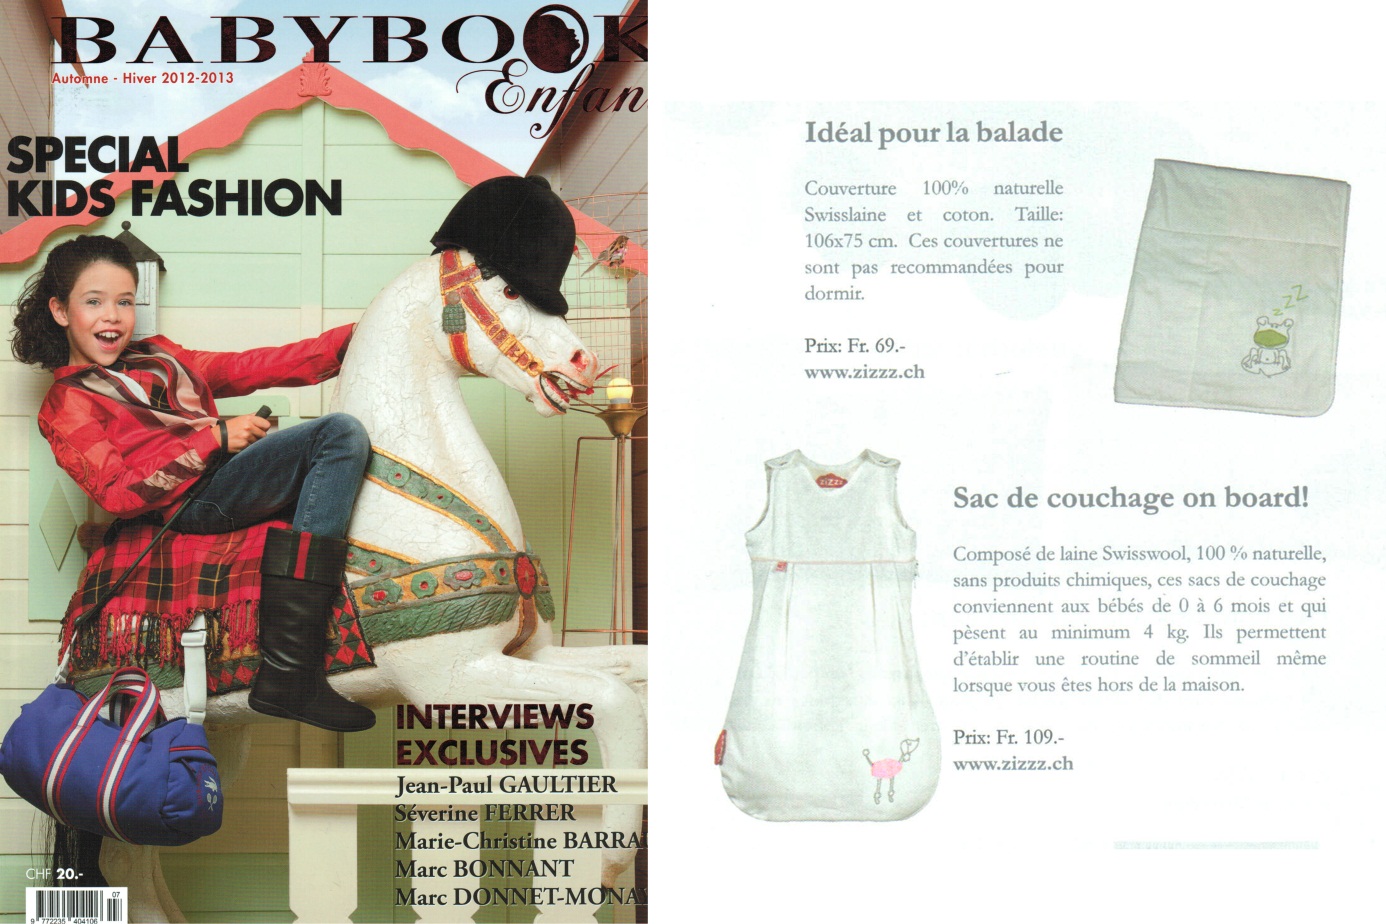 Photo de la couverture et de l'article sur Zizzz du magazine suisse "Babybook"